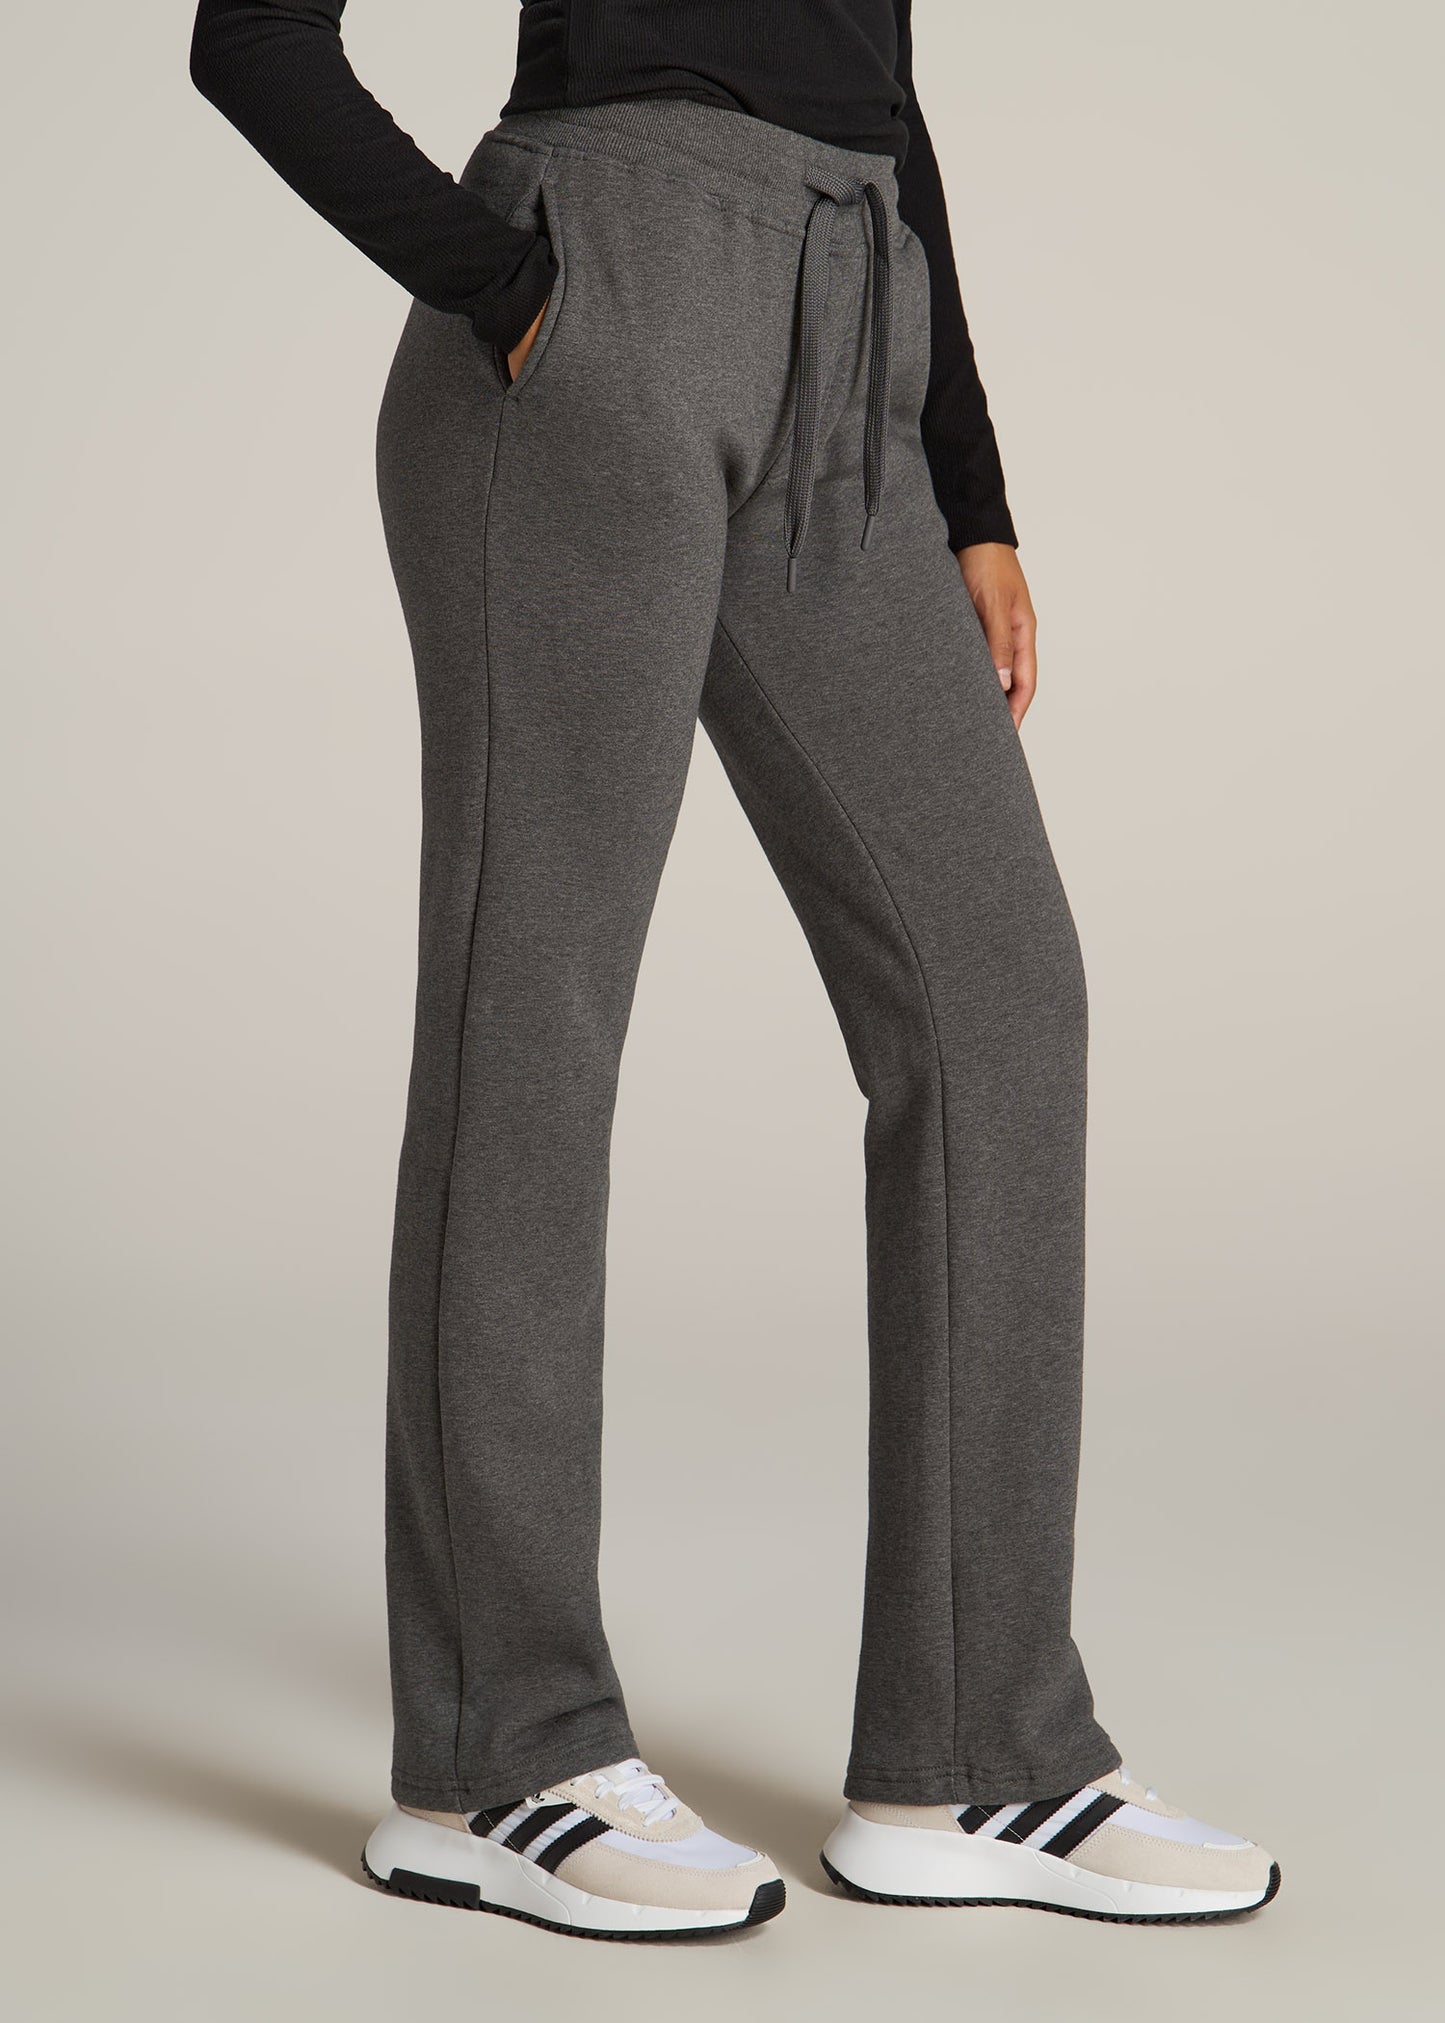 Wearever Fleece Relaxed Women's Tall Sweatpants Black, American Tall